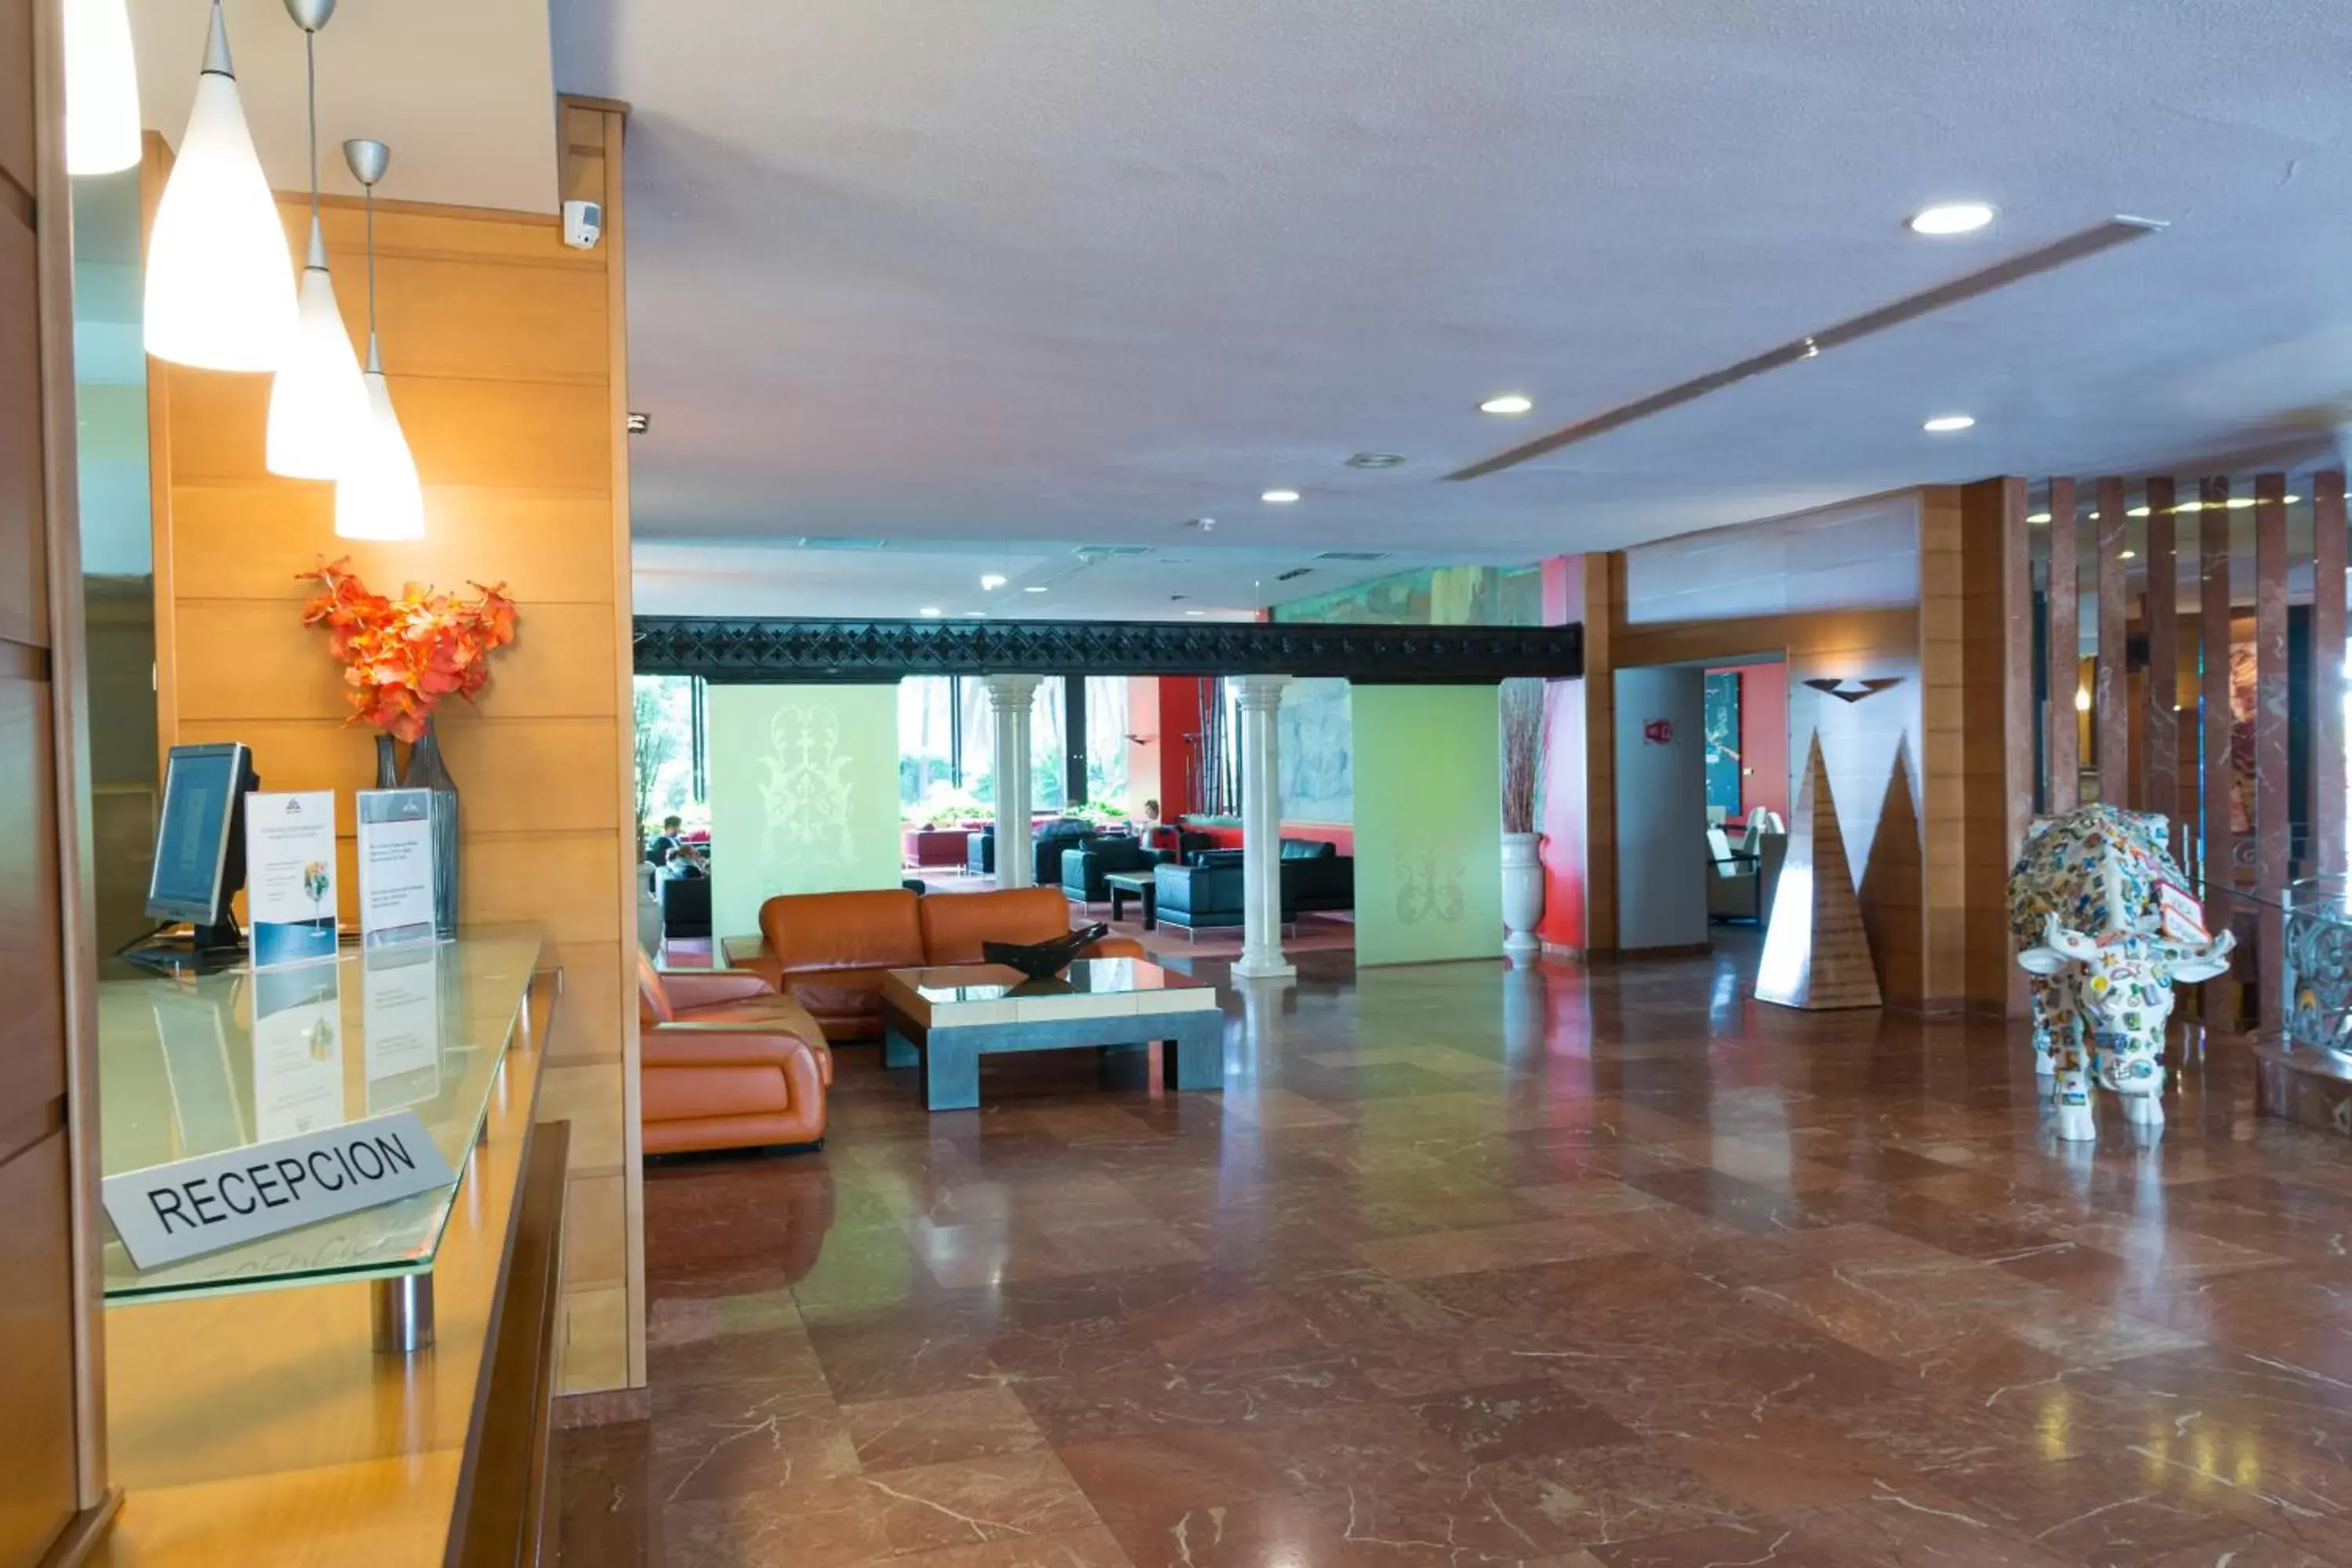 Lobby or reception, Lobby/Reception in BLUESEA Al Andalus